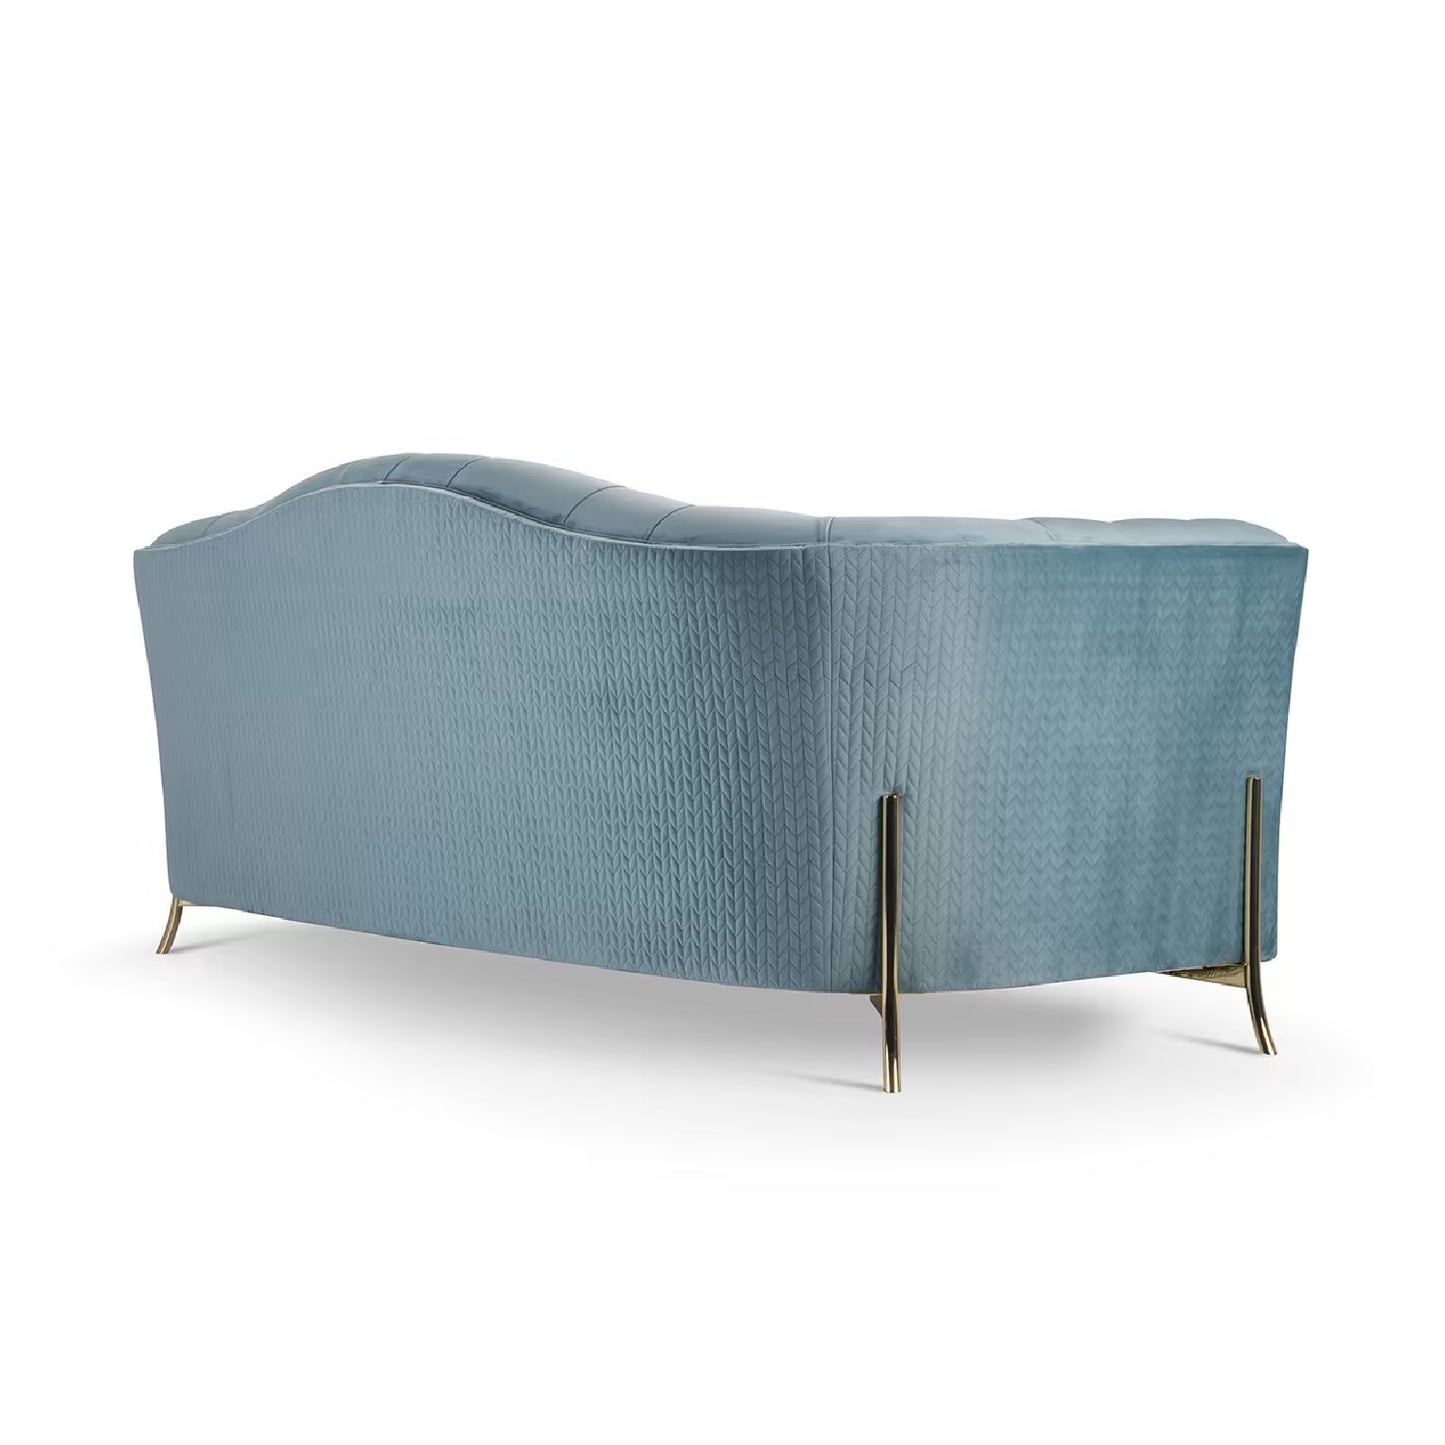 Nefele Peacock Blue 3-Seater Sofa by Domingo Salotti